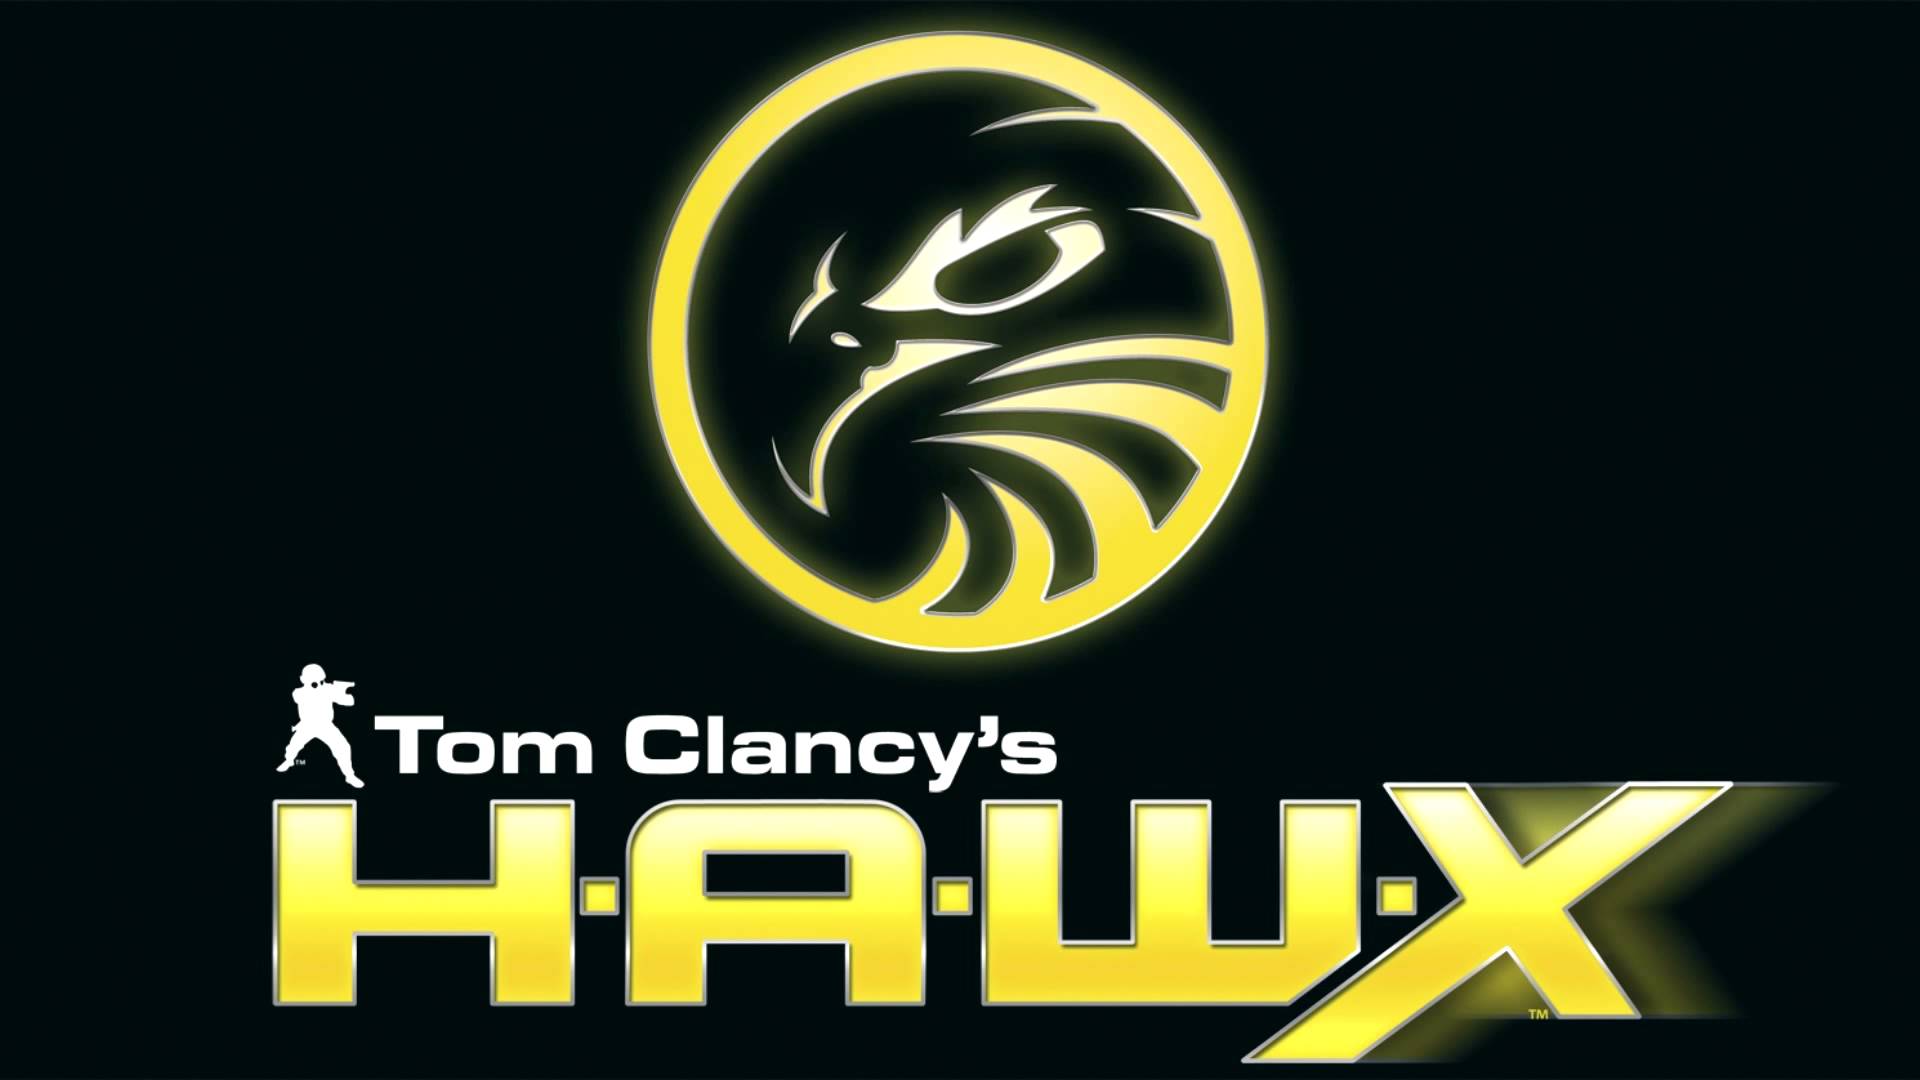 Tom clancy hawx steam фото 103